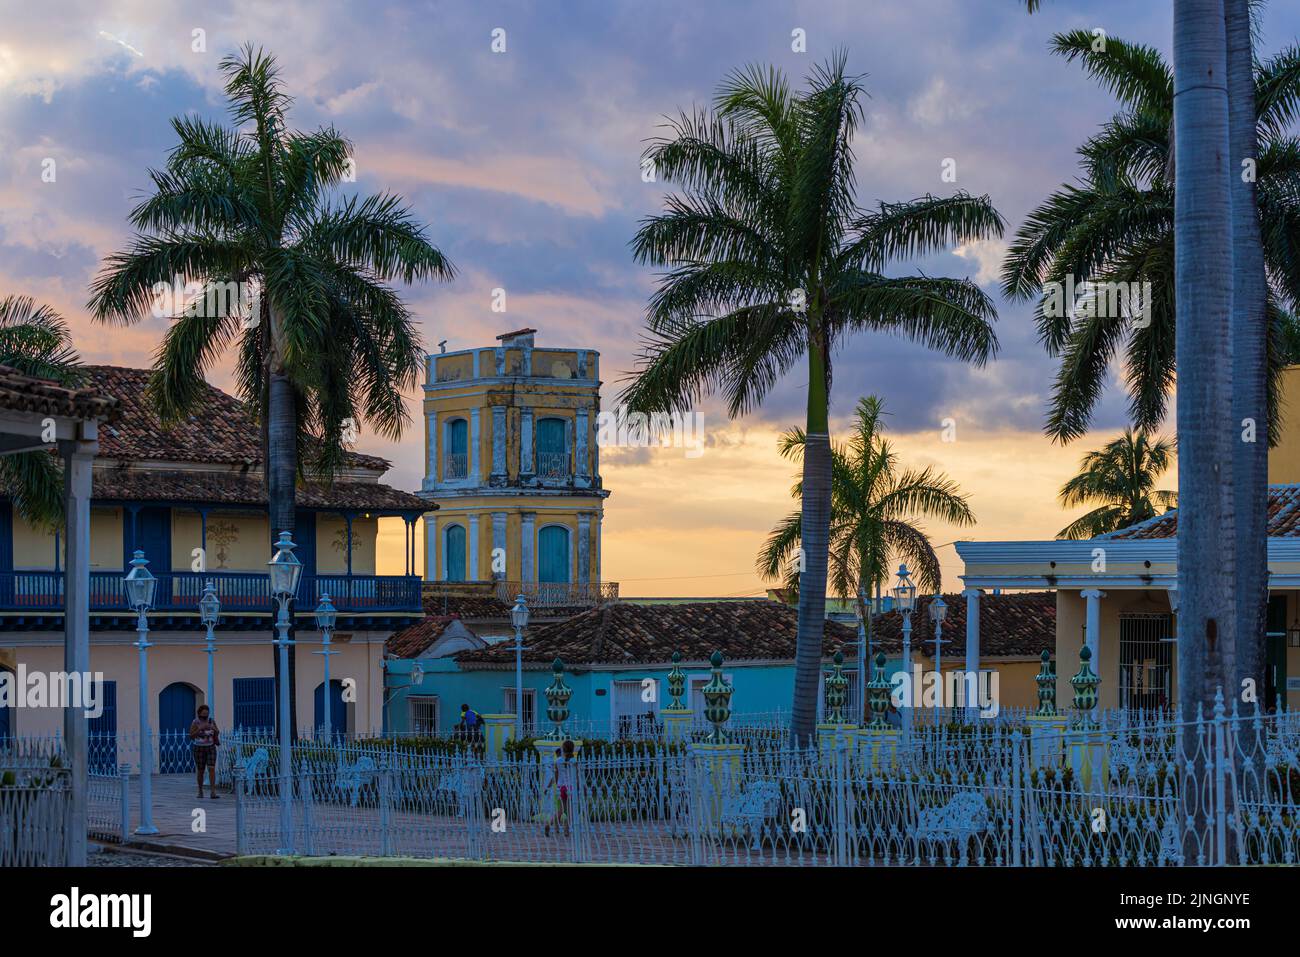 TRINIDAD, CUBA - JANUARY 7, 2021: The main square in Trinidad, Cuba Stock Photo